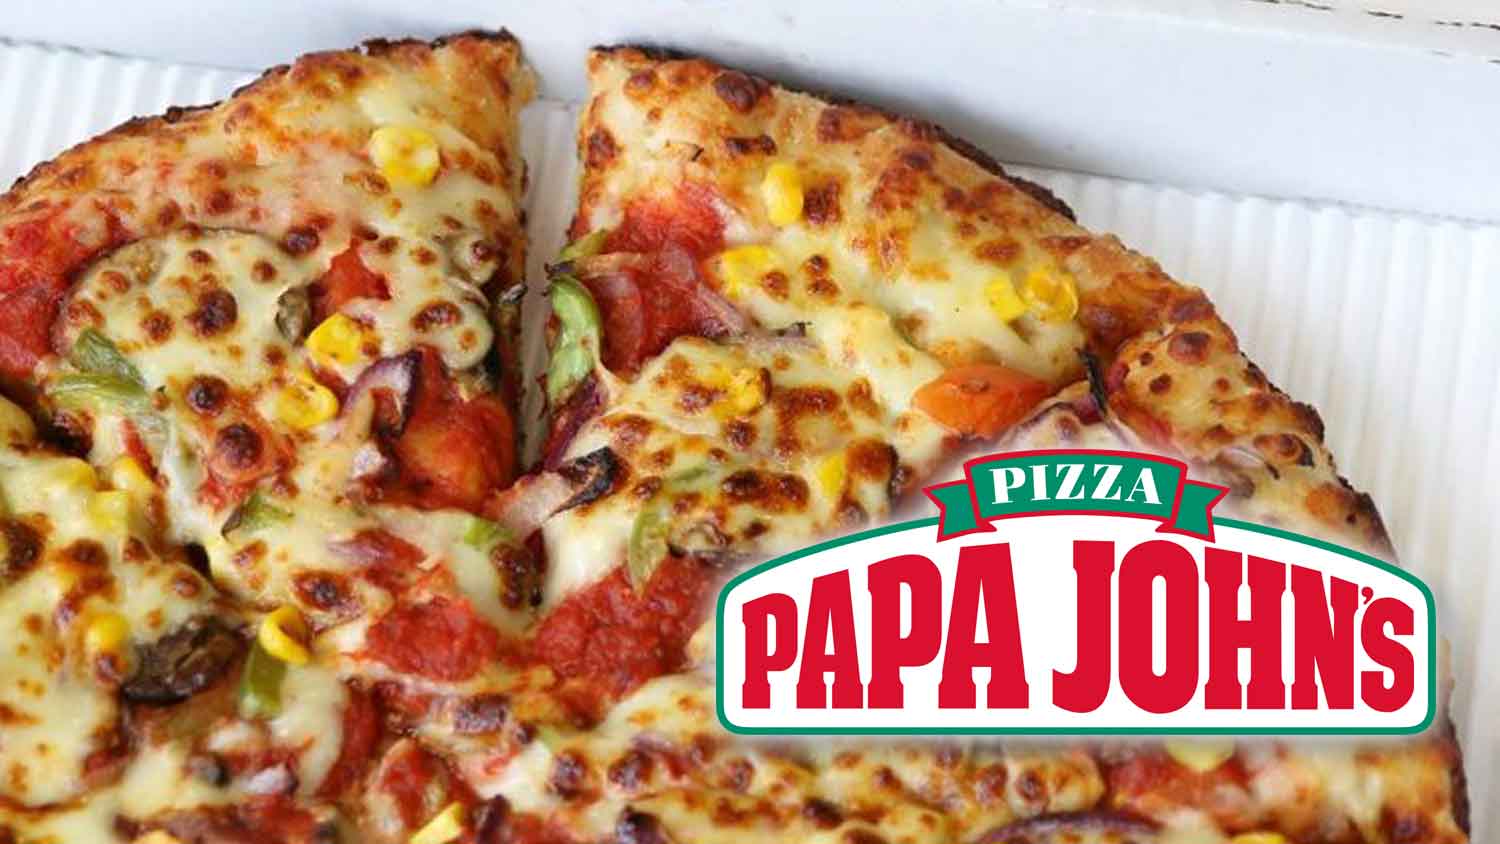 Papa: The Story of Papa John's Pizza